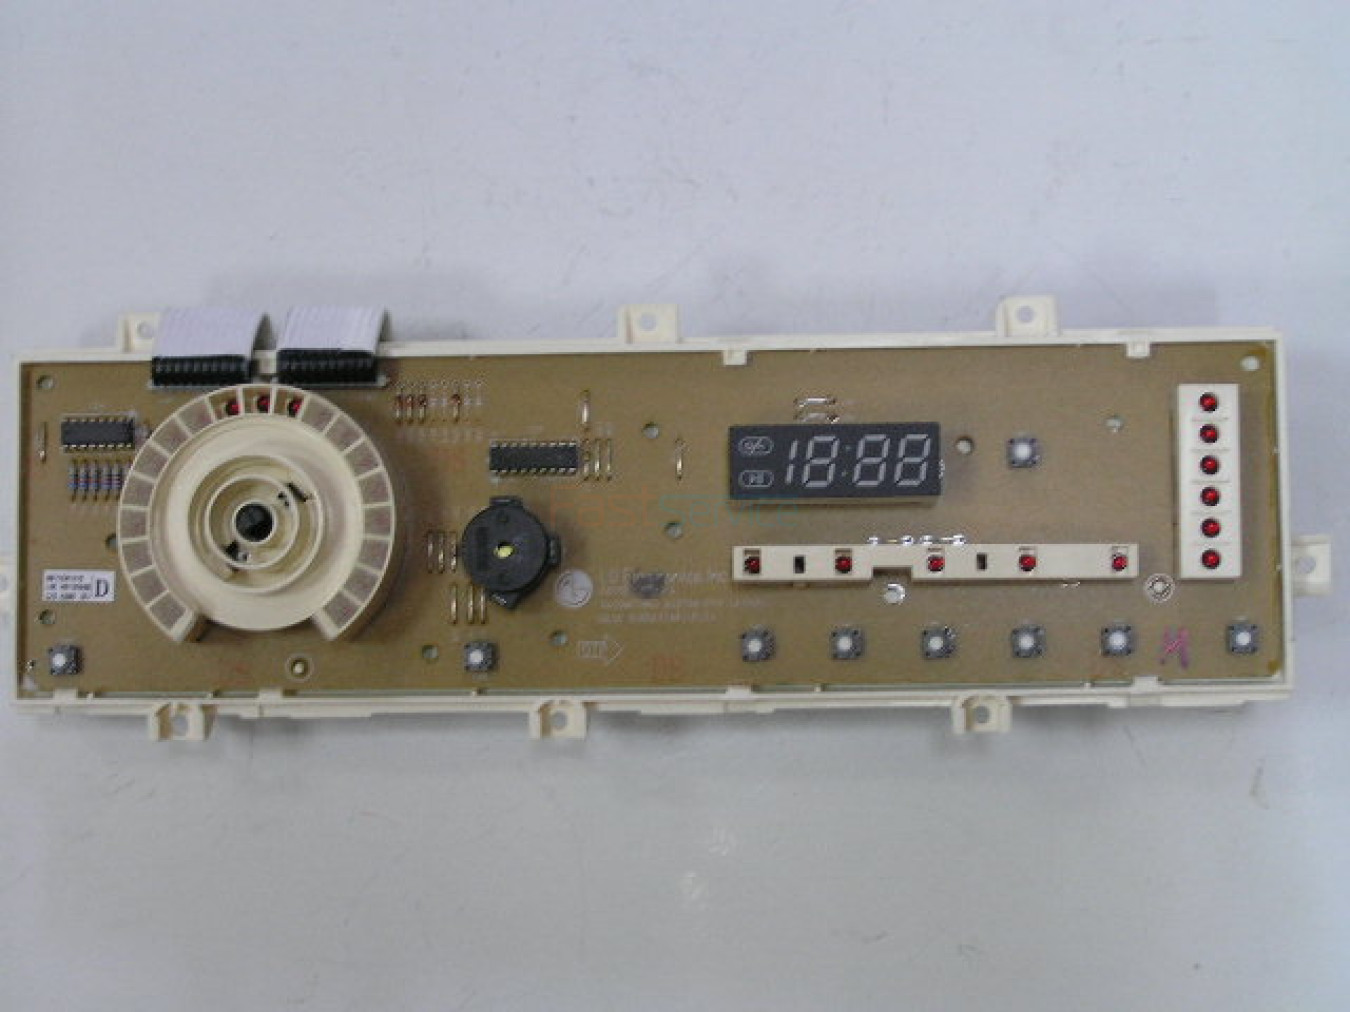 6871EN1015D Модуль управления СМА LG